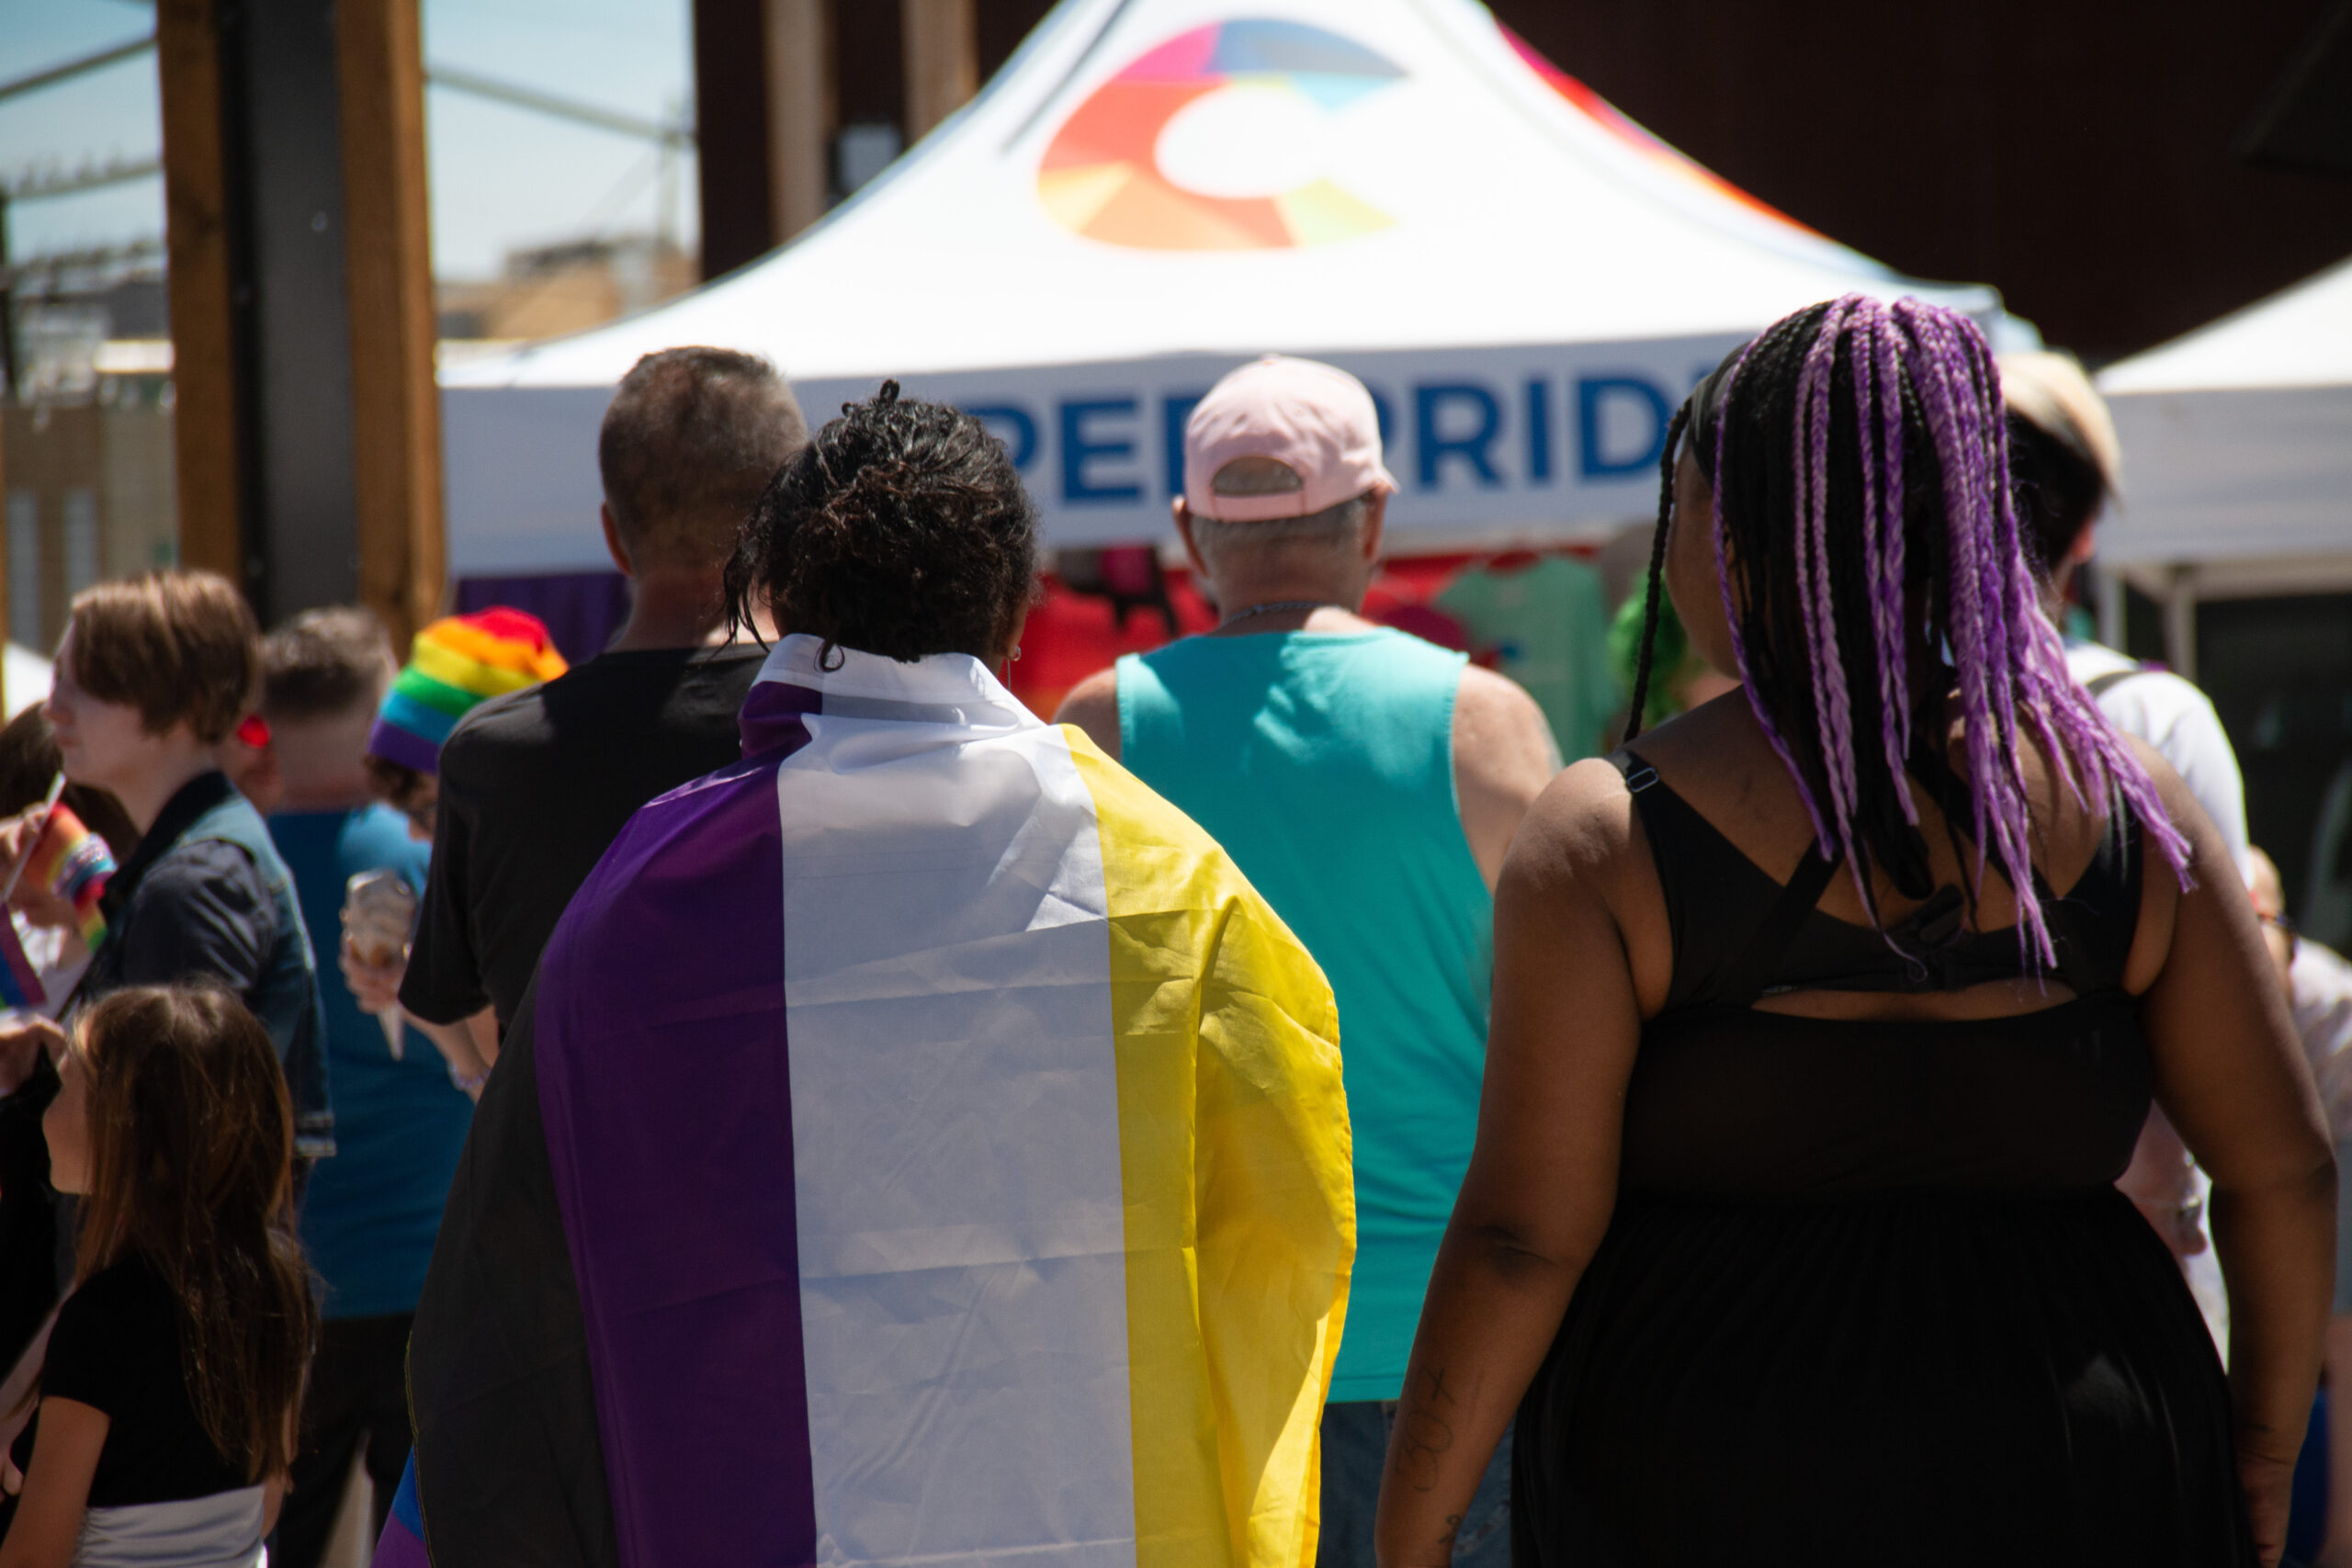 Casper Pride launches website update, prepares for Pride Week